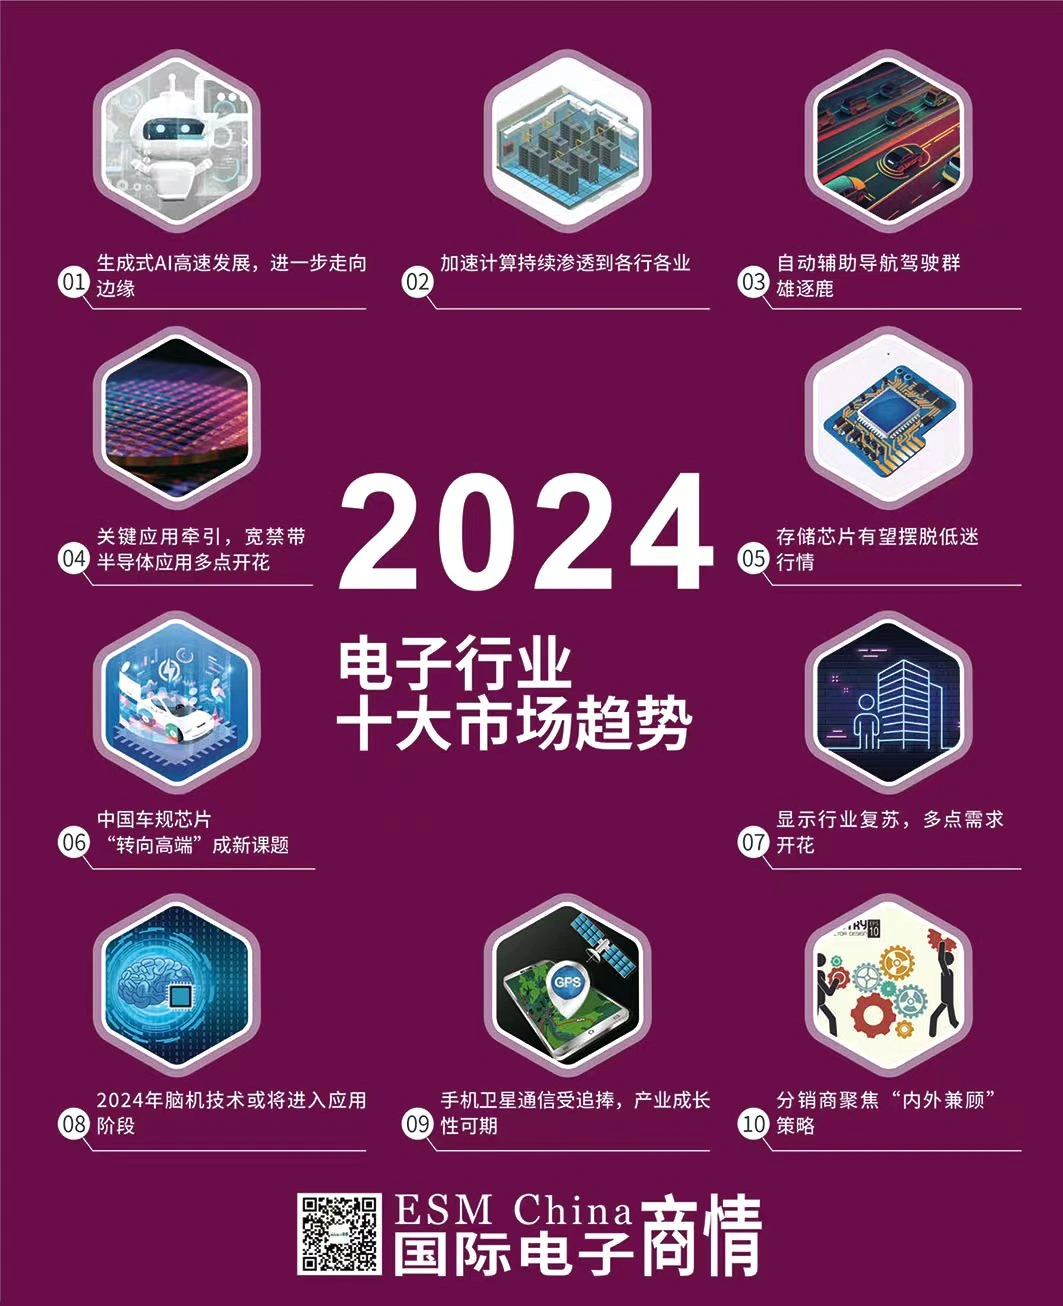 2024 Yılında Elektronik Sektöründe İlk 10 Pazar ve Uygulama Trendleri